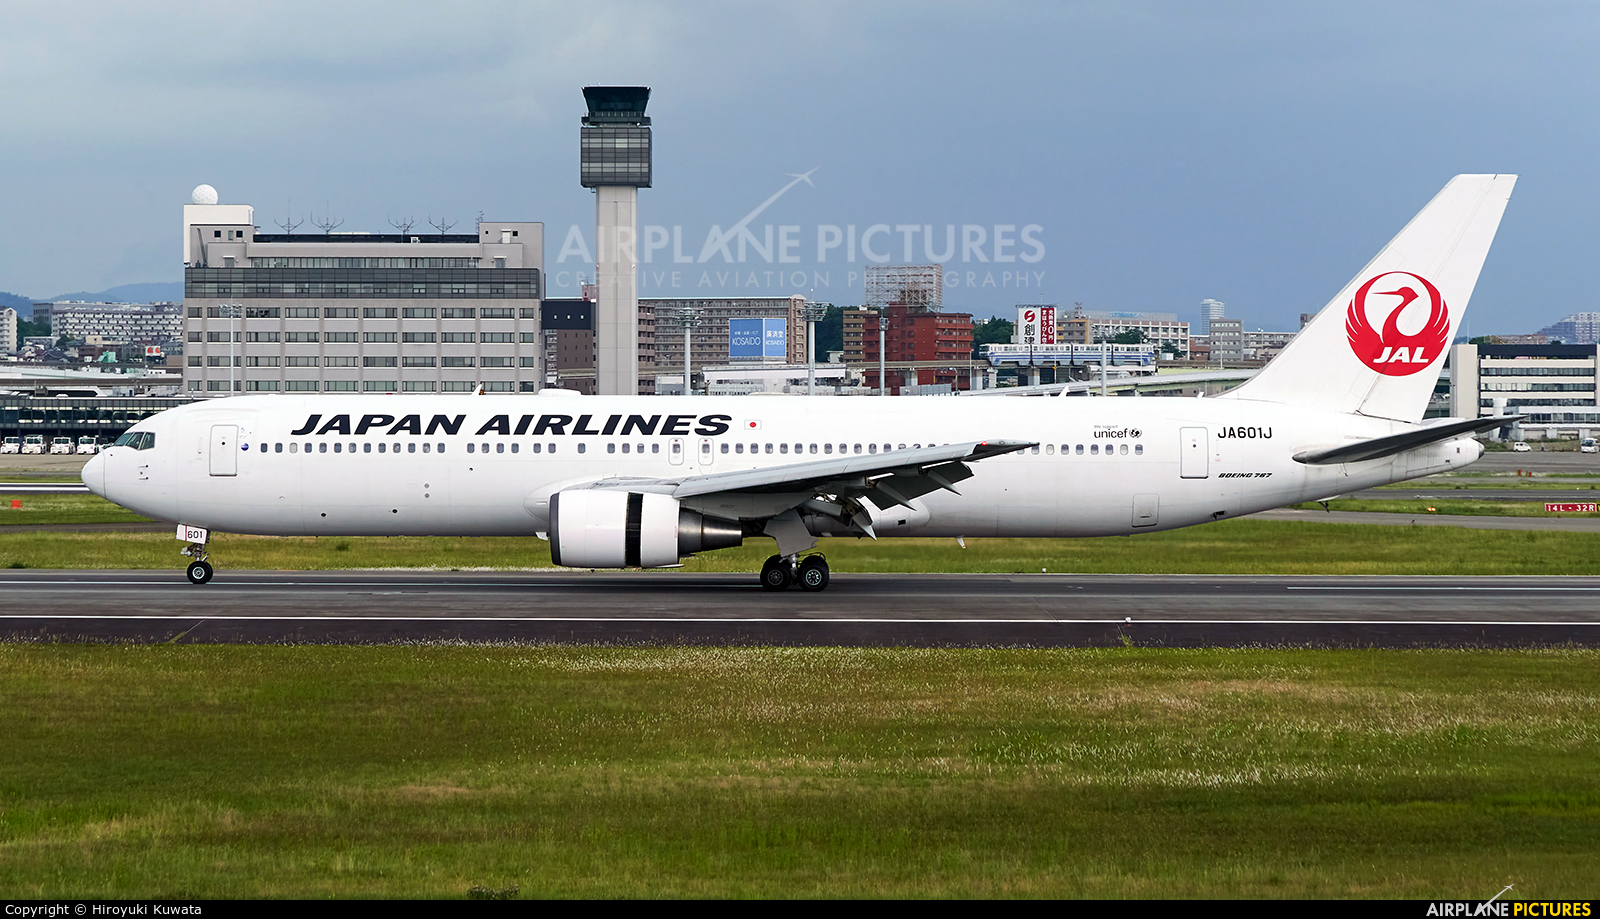 JAL - Japan Airlines JA601J aircraft at Osaka - Itami Intl